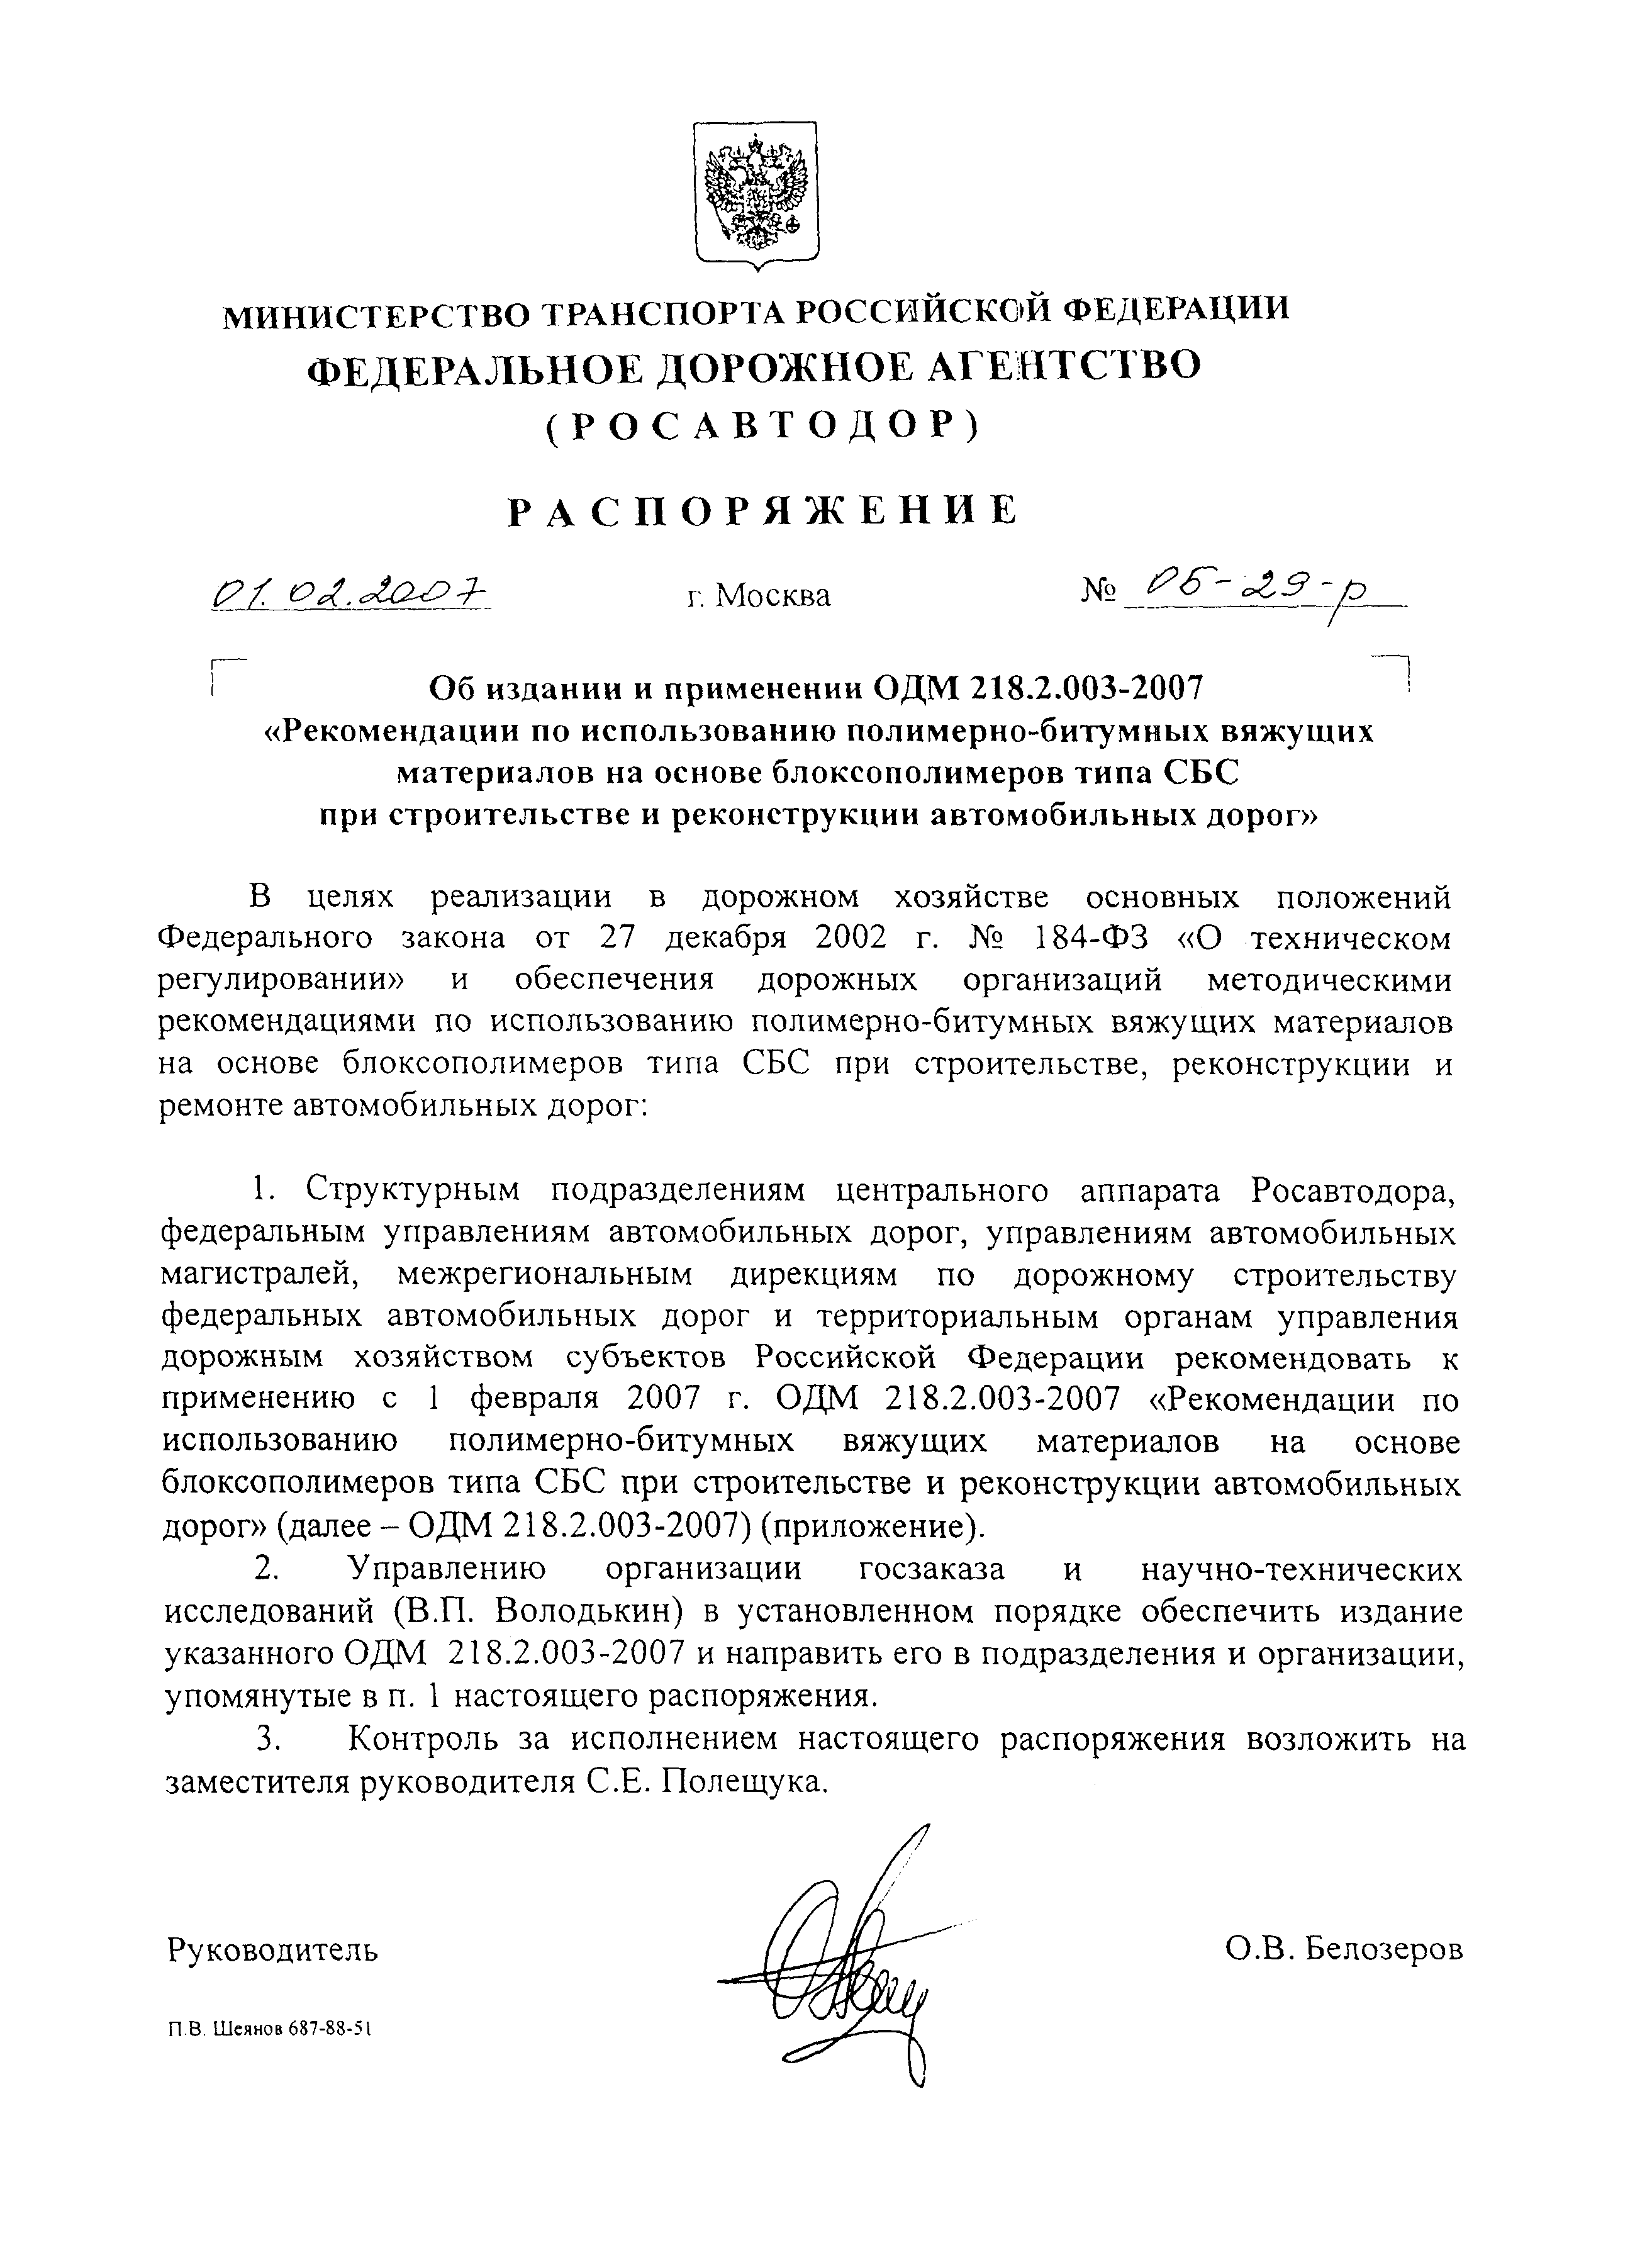 Распоряжение ОБ-29-р